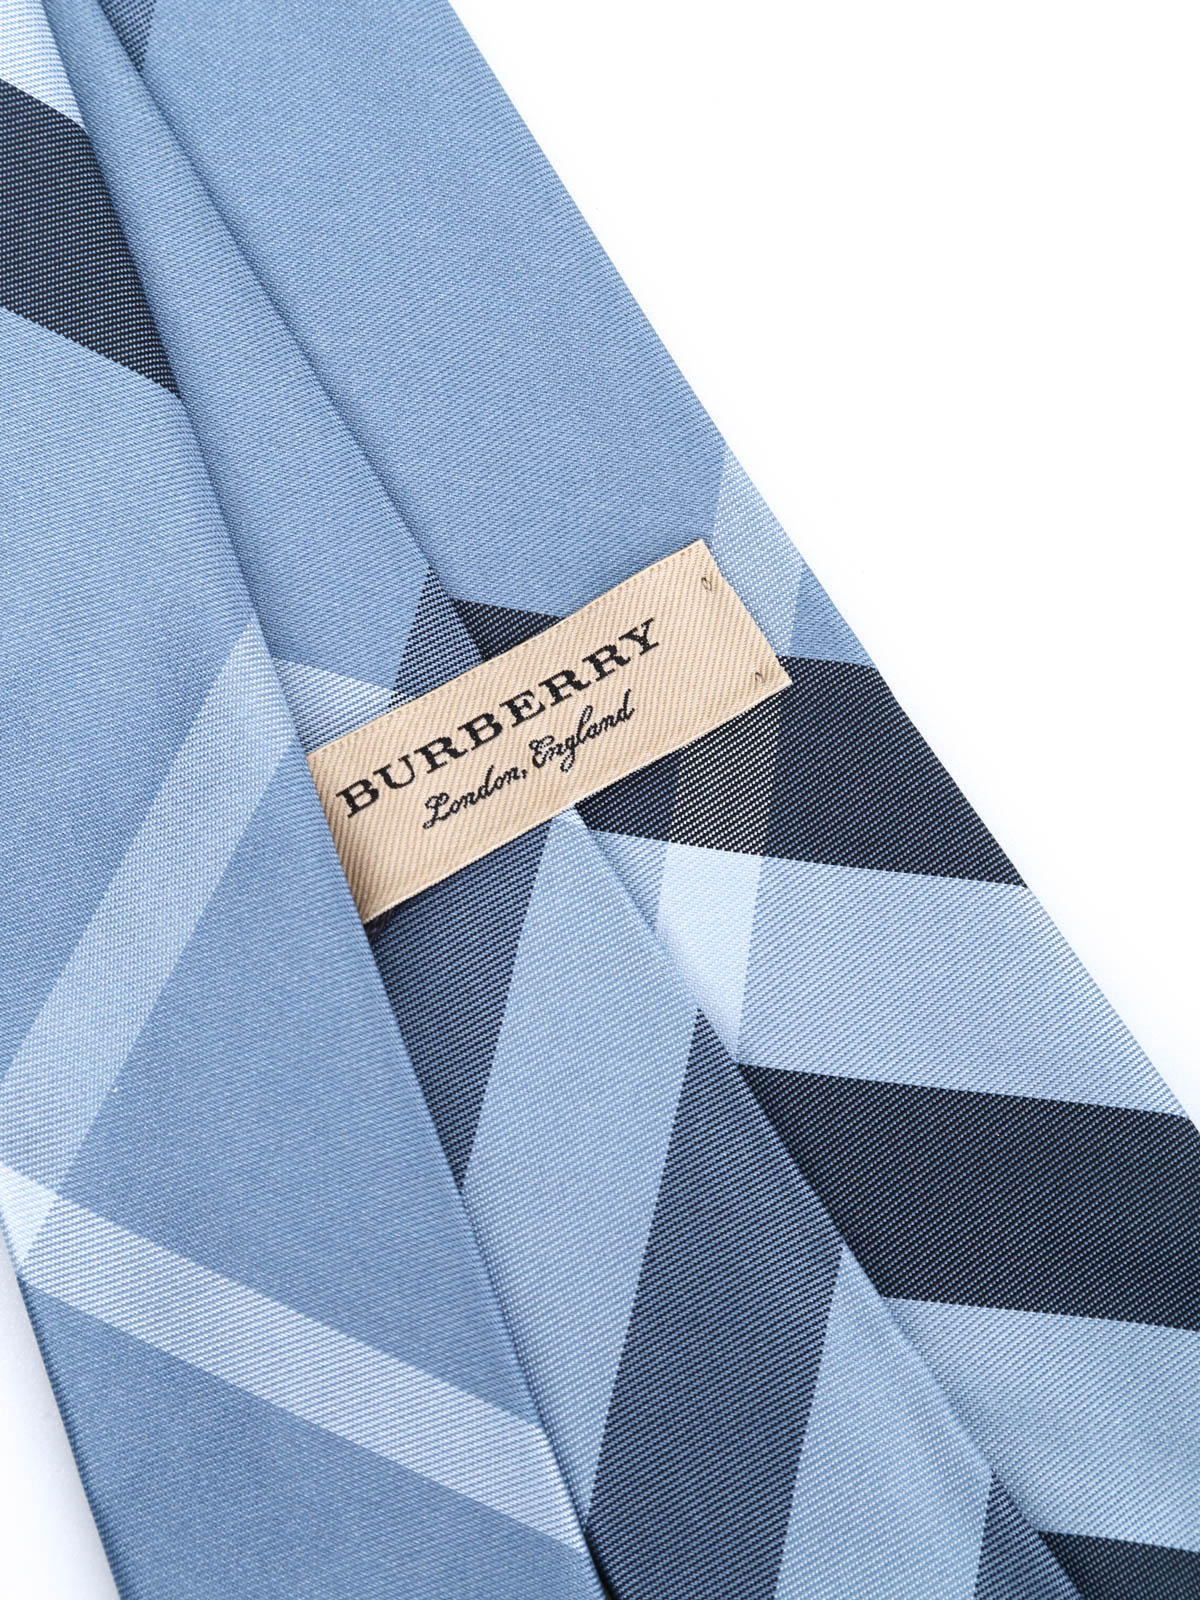 Ties & bow ties Burberry - Manston Check silk tie - 45575911 